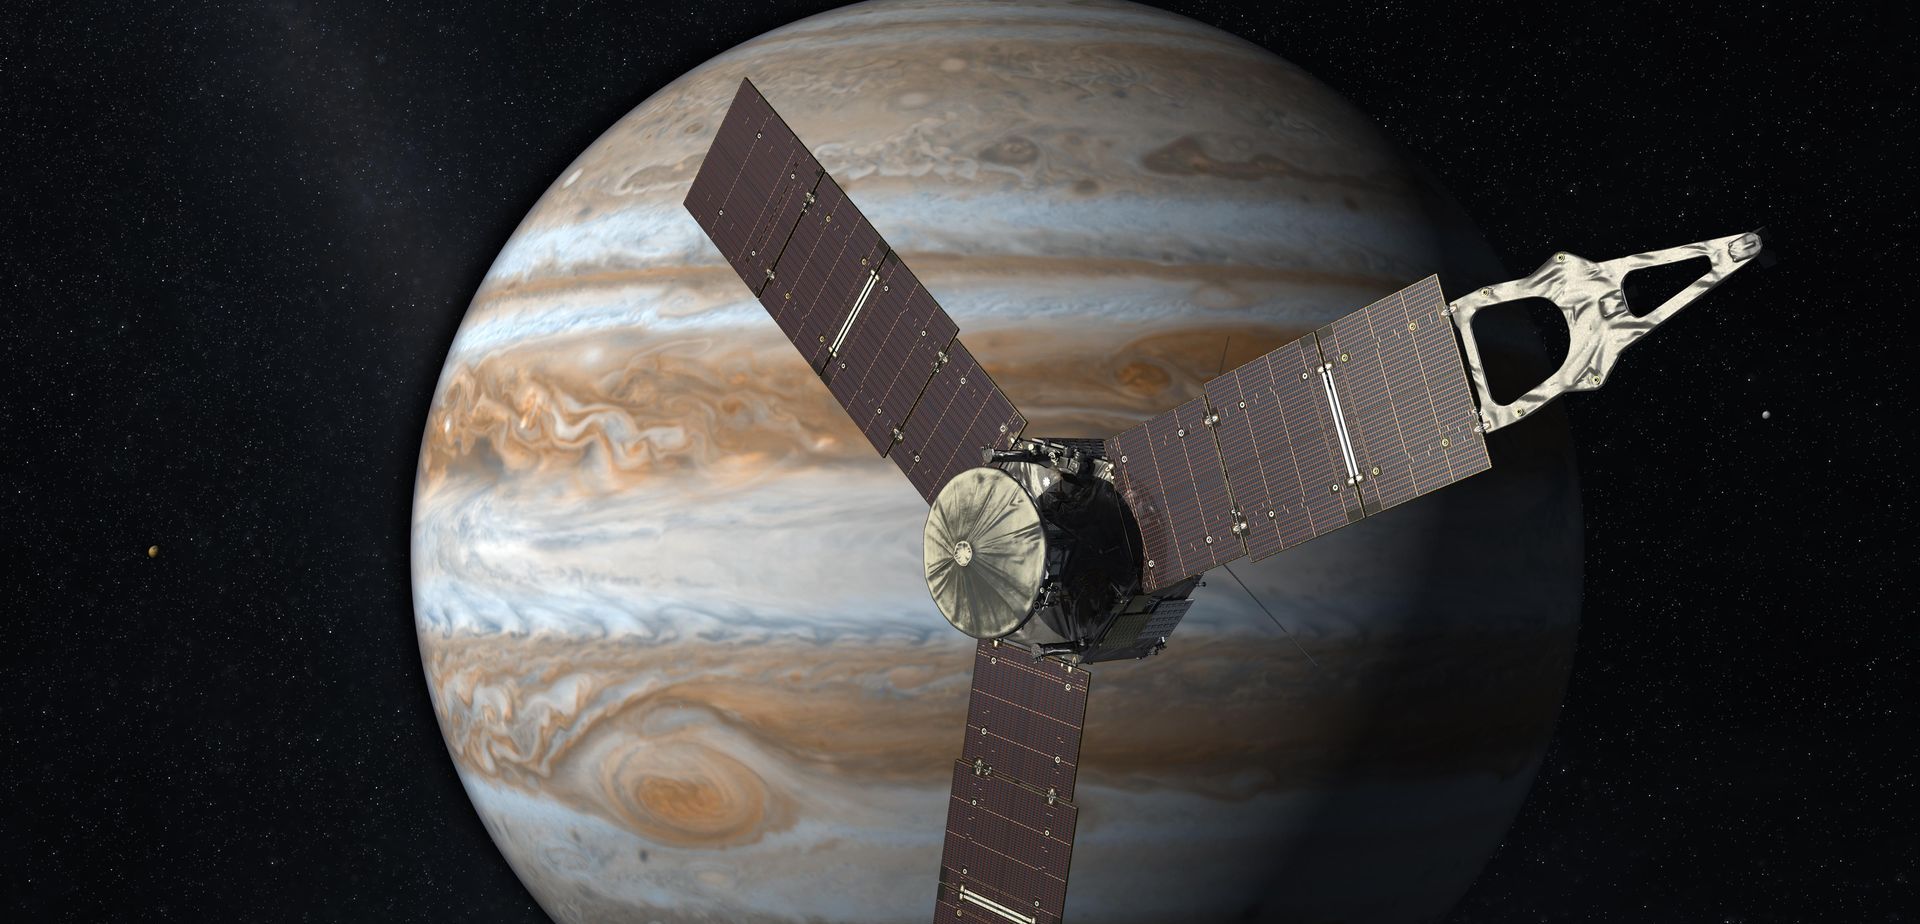 Vue d'artiste de la sonde Juno de la Nasa d'étude de Jupiter. © Nasa